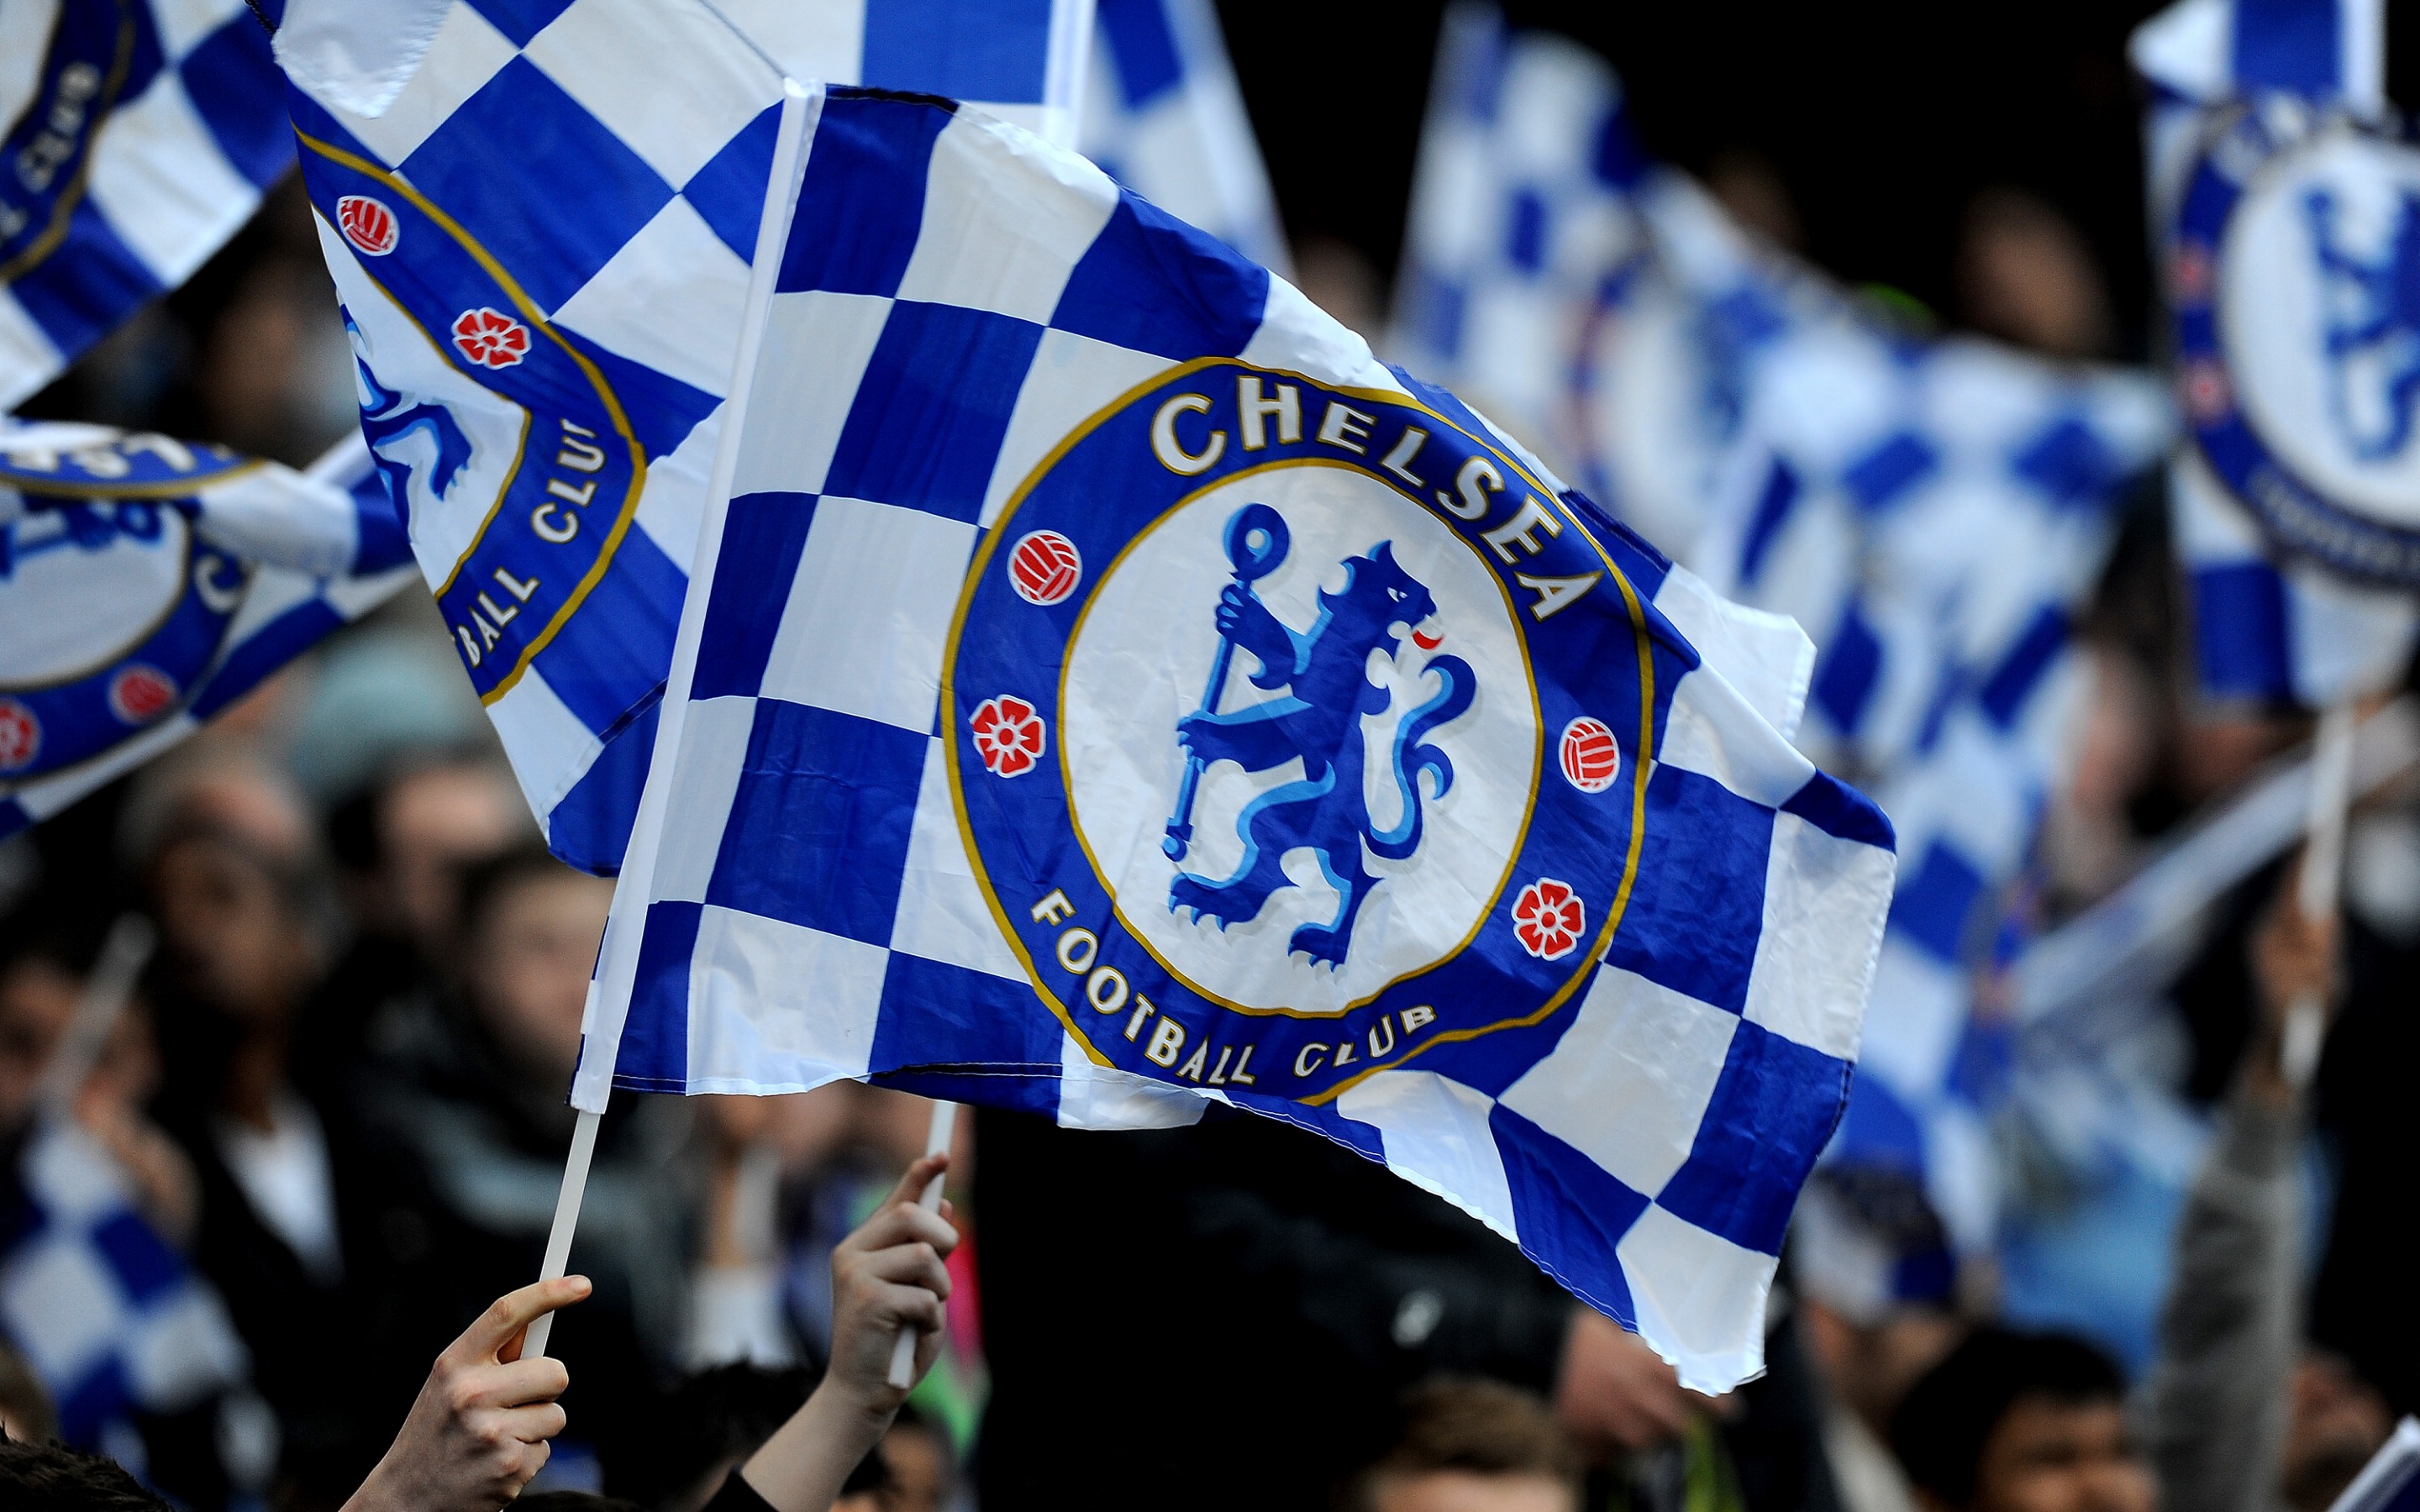 Téléchargez des papiers peints mobile Des Sports, Football, Chelsea Fc gratuitement.